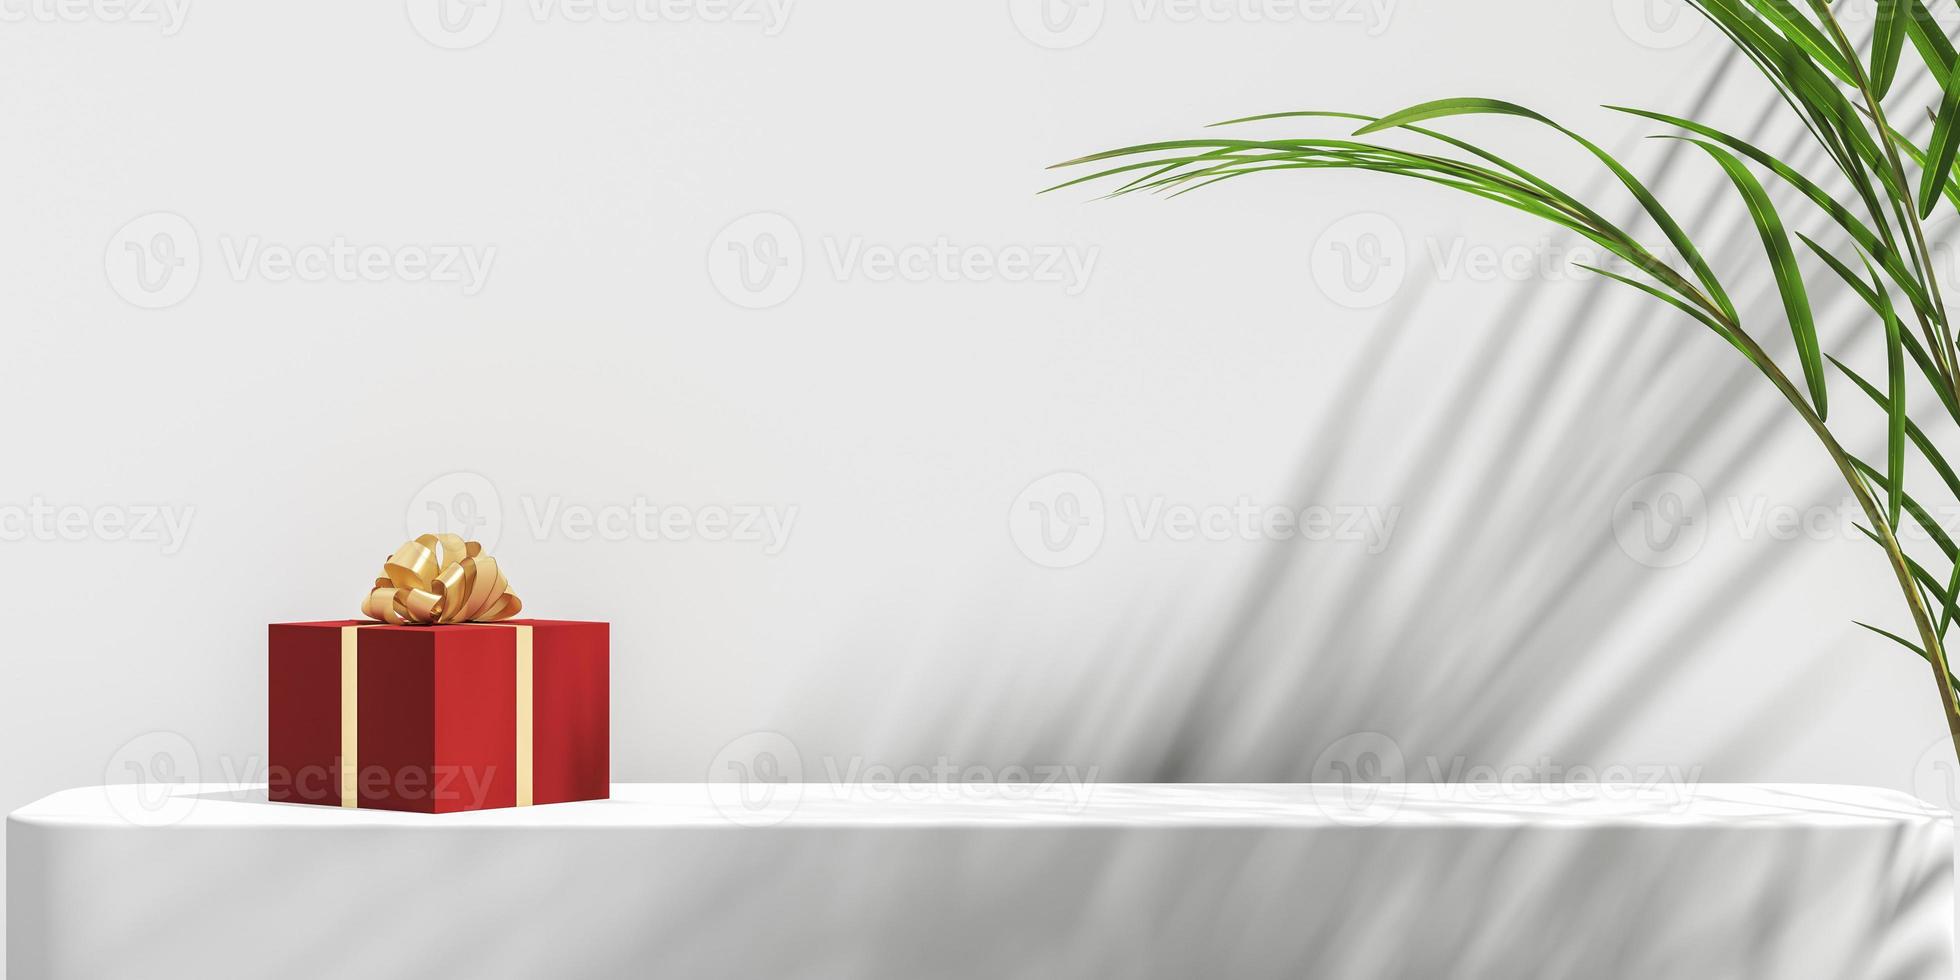 minimalistisk abstrakt mockup bakgrund, den röda presentförpackningen på vit plattform, solskydd tropiska växter skugga på vit vägg, tropisk växt förgrund. 3d-rendering foto